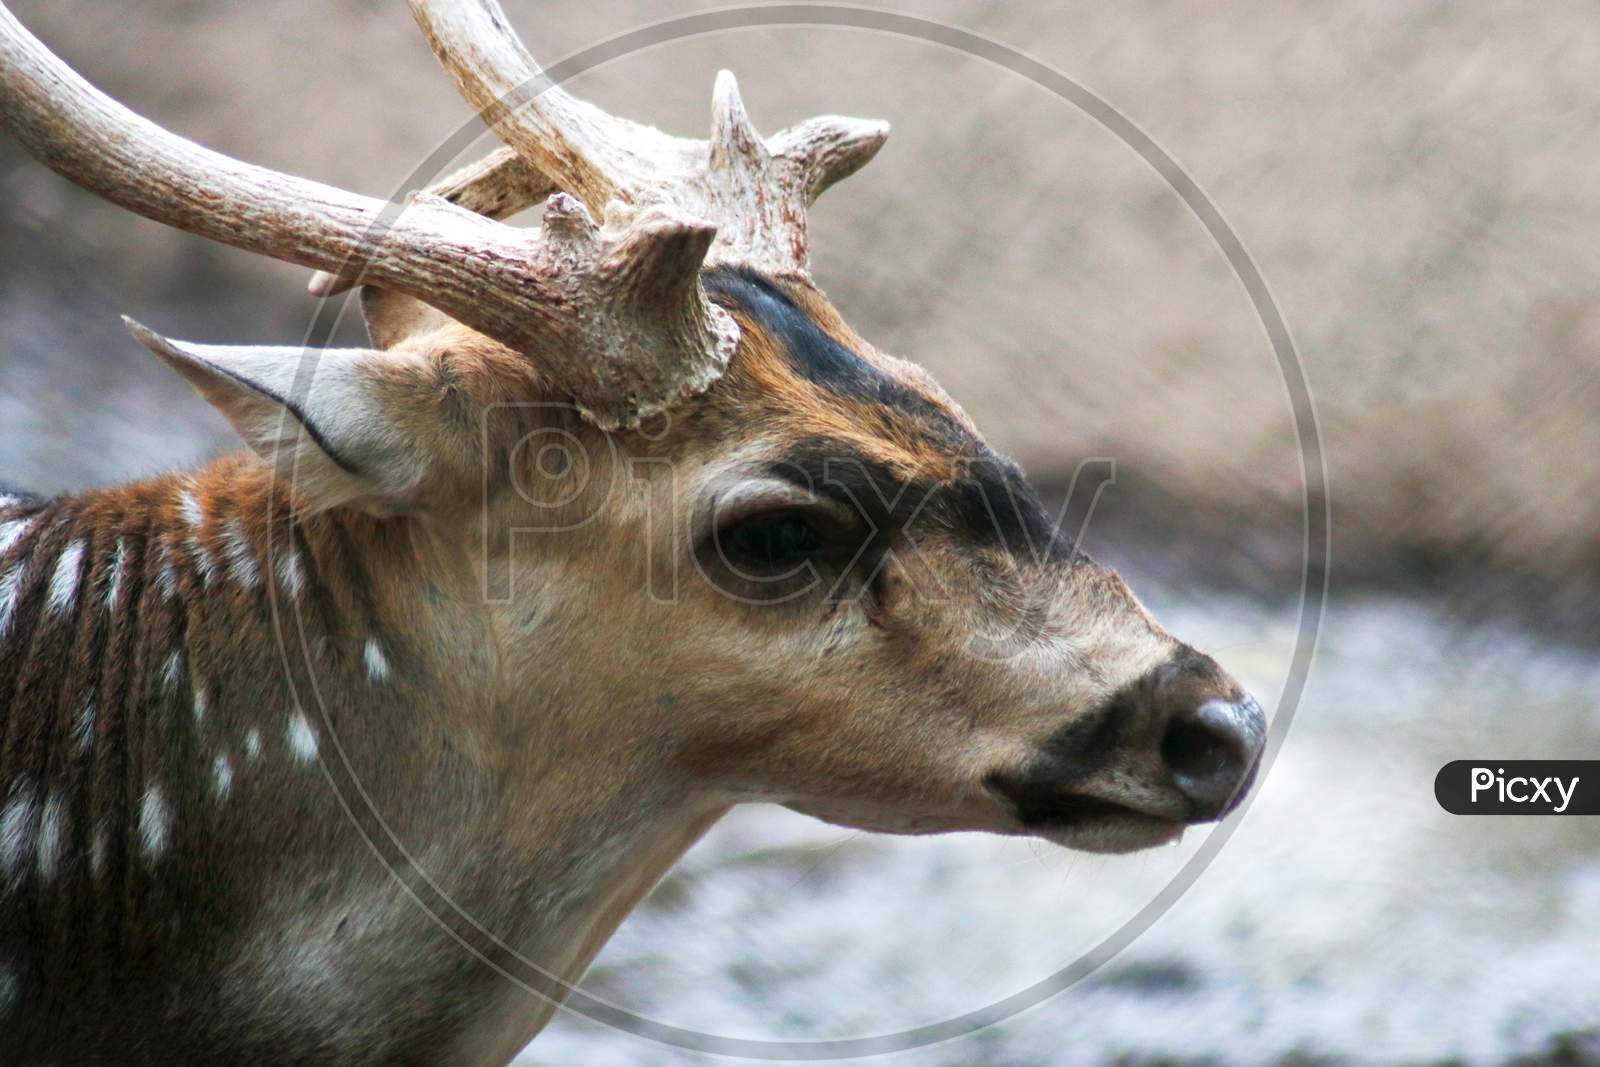 Close up of a deer